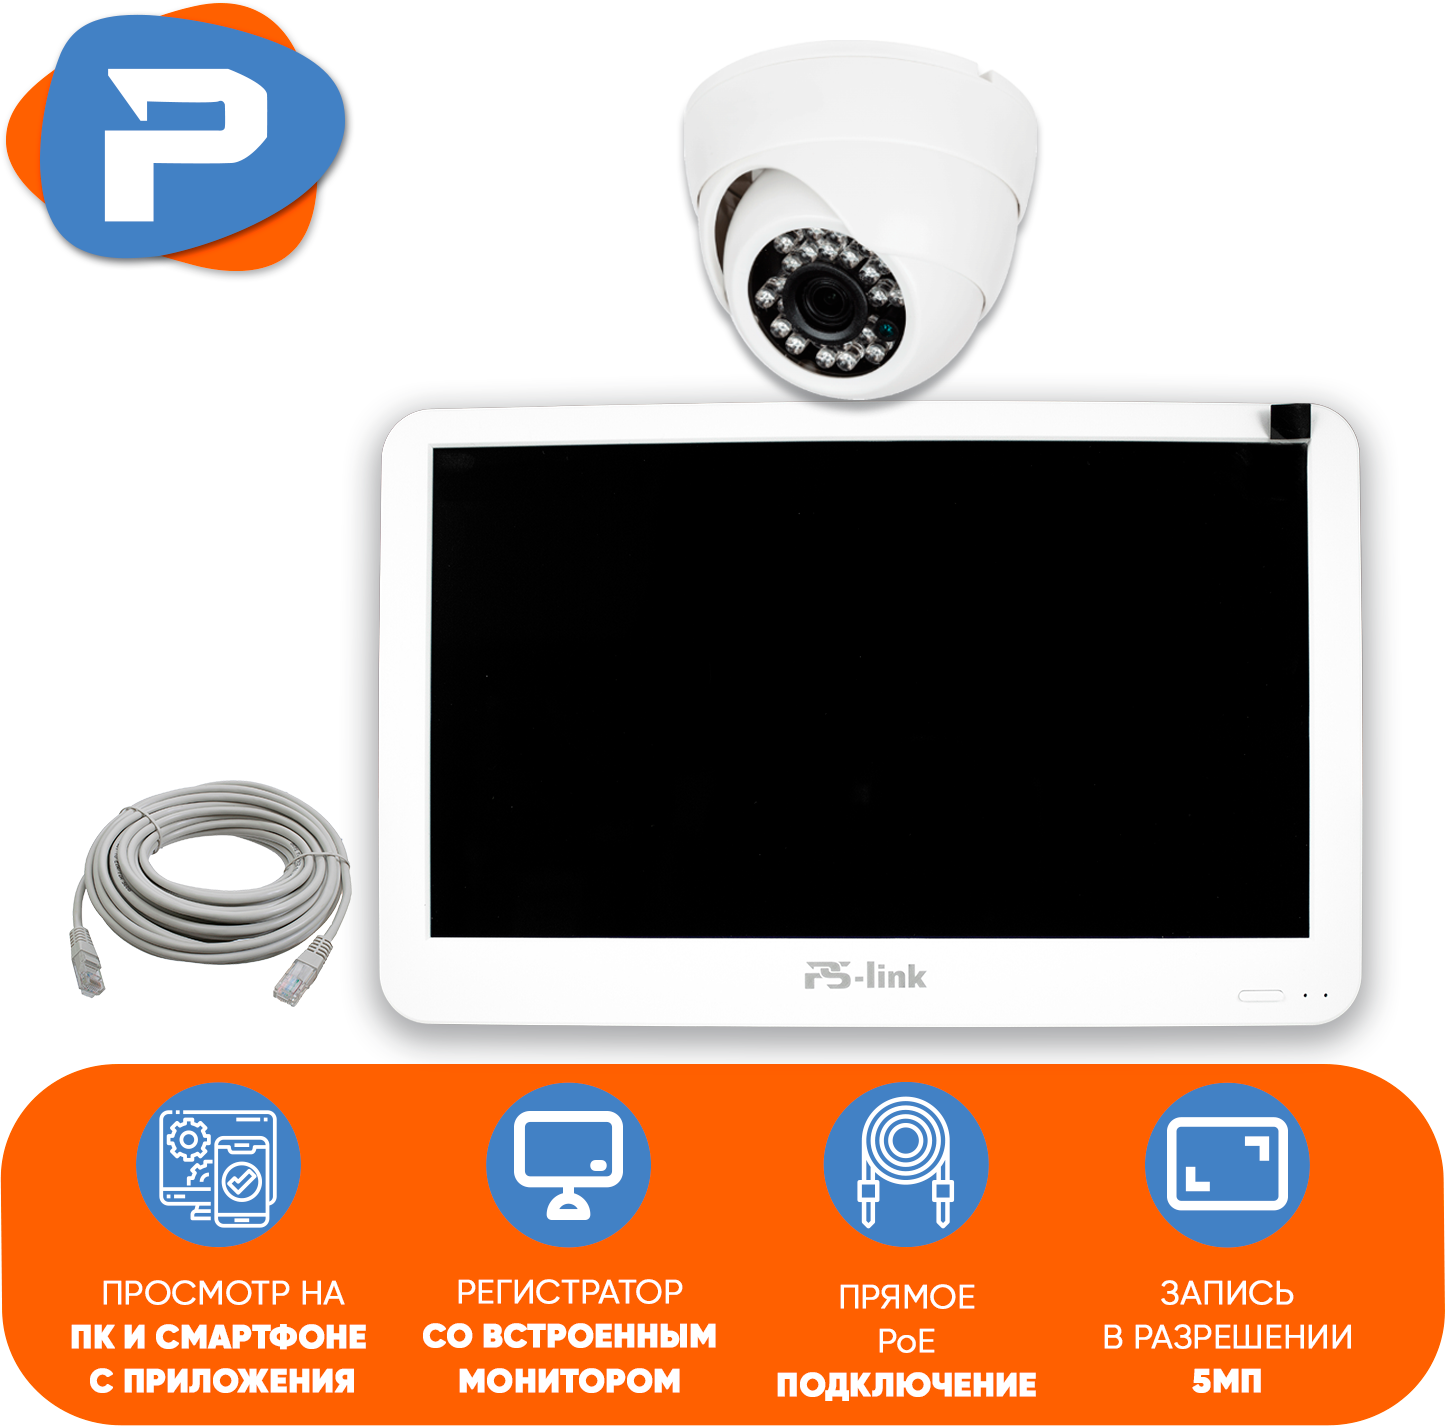 Комплект видеонаблюдения PS-link KIT-A501LCD IP-PoE/ монитор 10